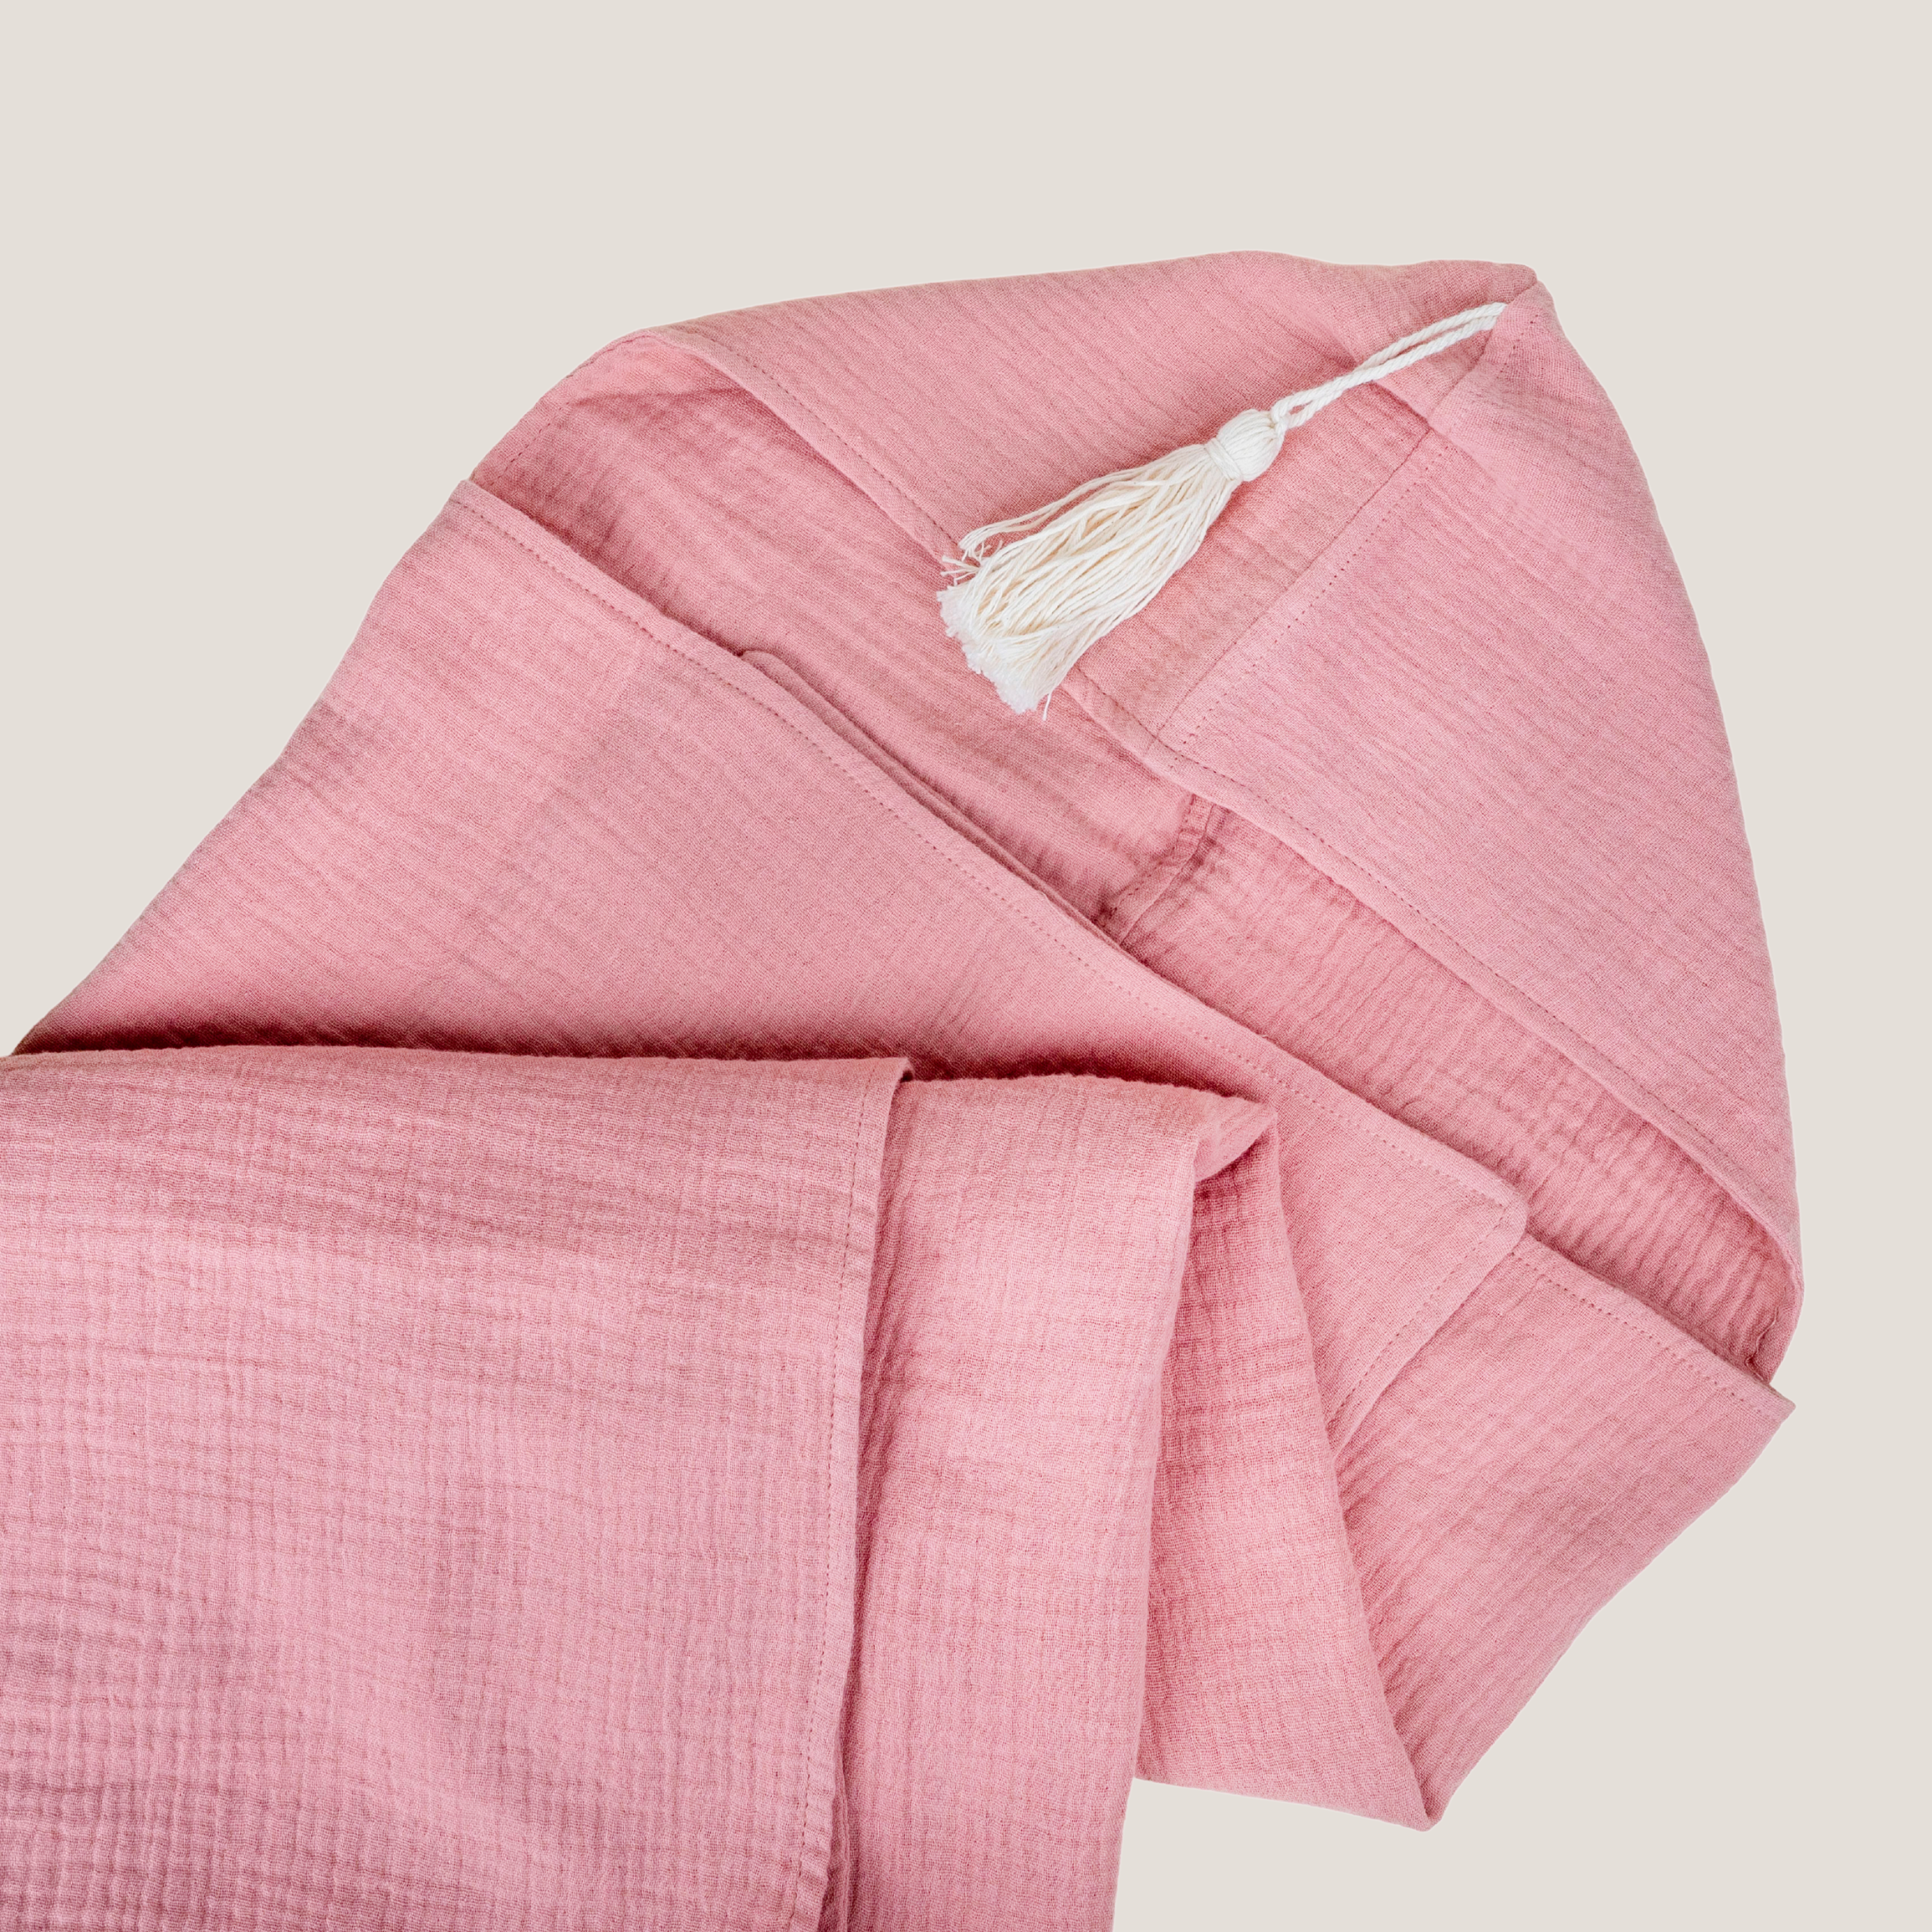 Organic Hooded Muslin Towel in Dusty Pink